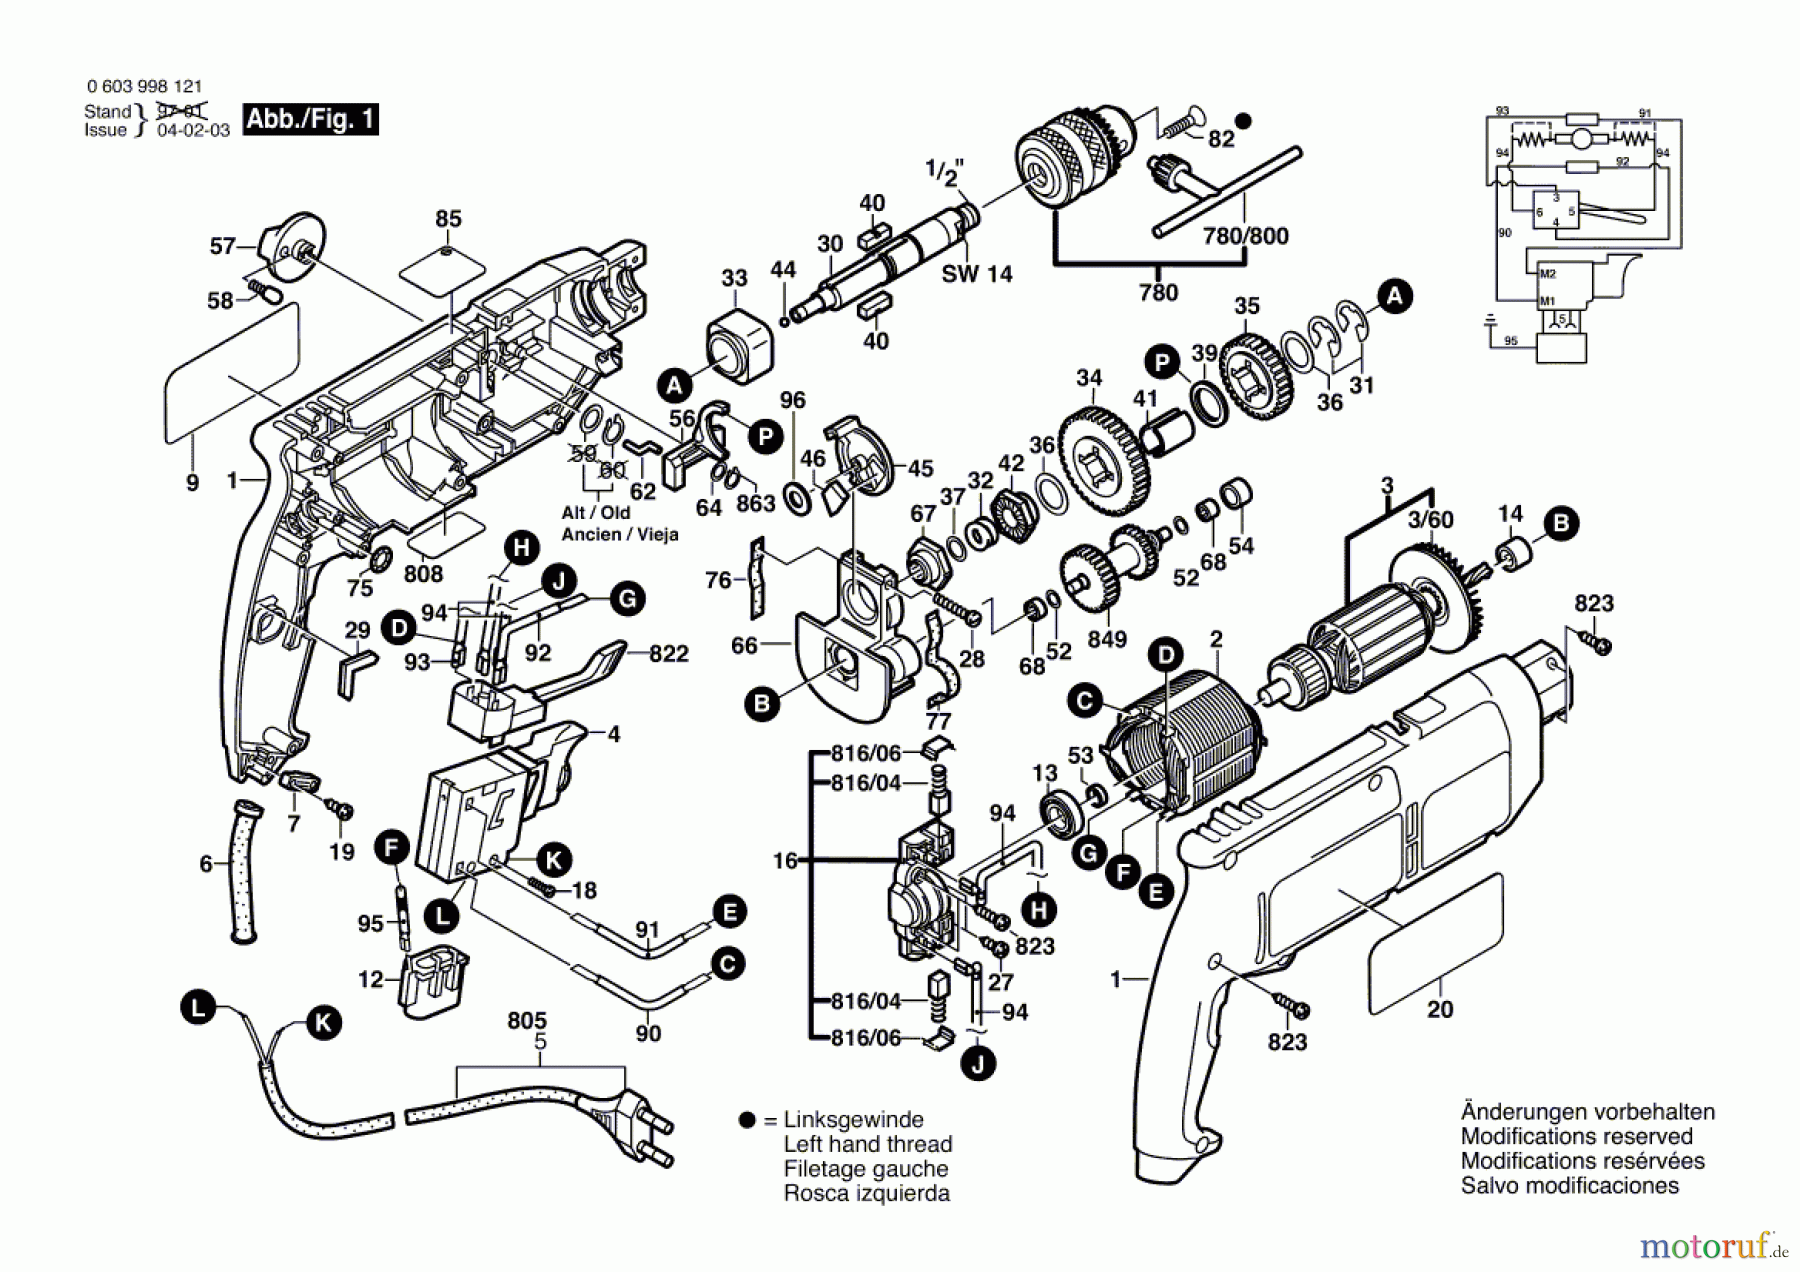  Bosch Werkzeug Schlagbohrmaschine CSB 6-20 RE Seite 1